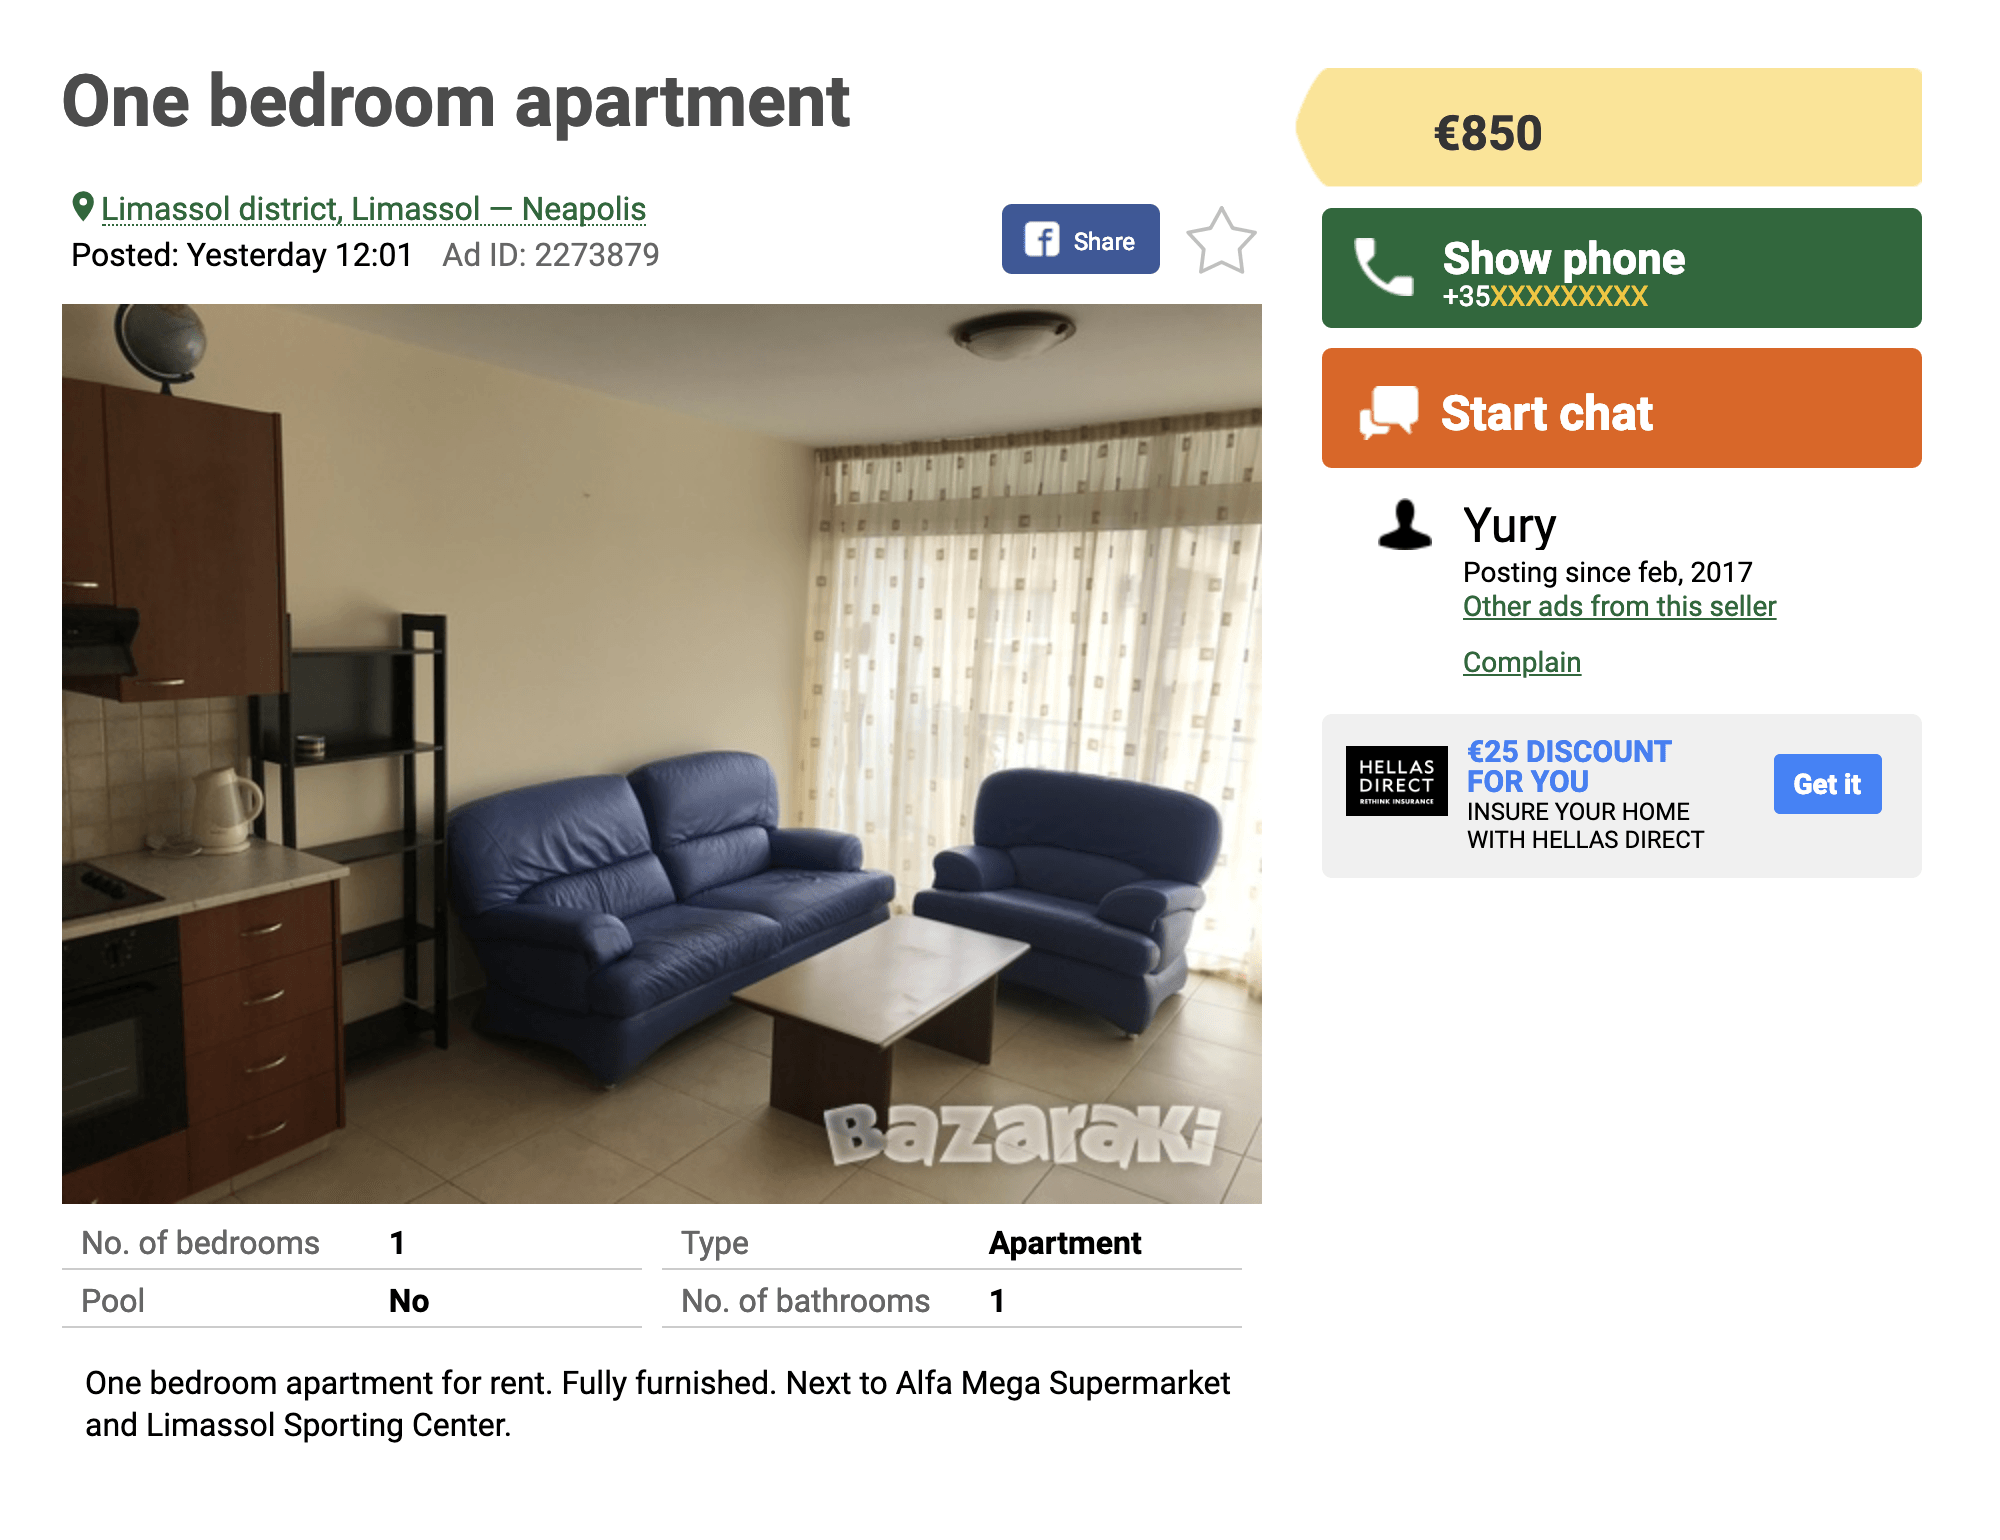 Квартиру с одной спальней и гостиной в районе Лимасола можно снять за 850 €. Студию — дешевле